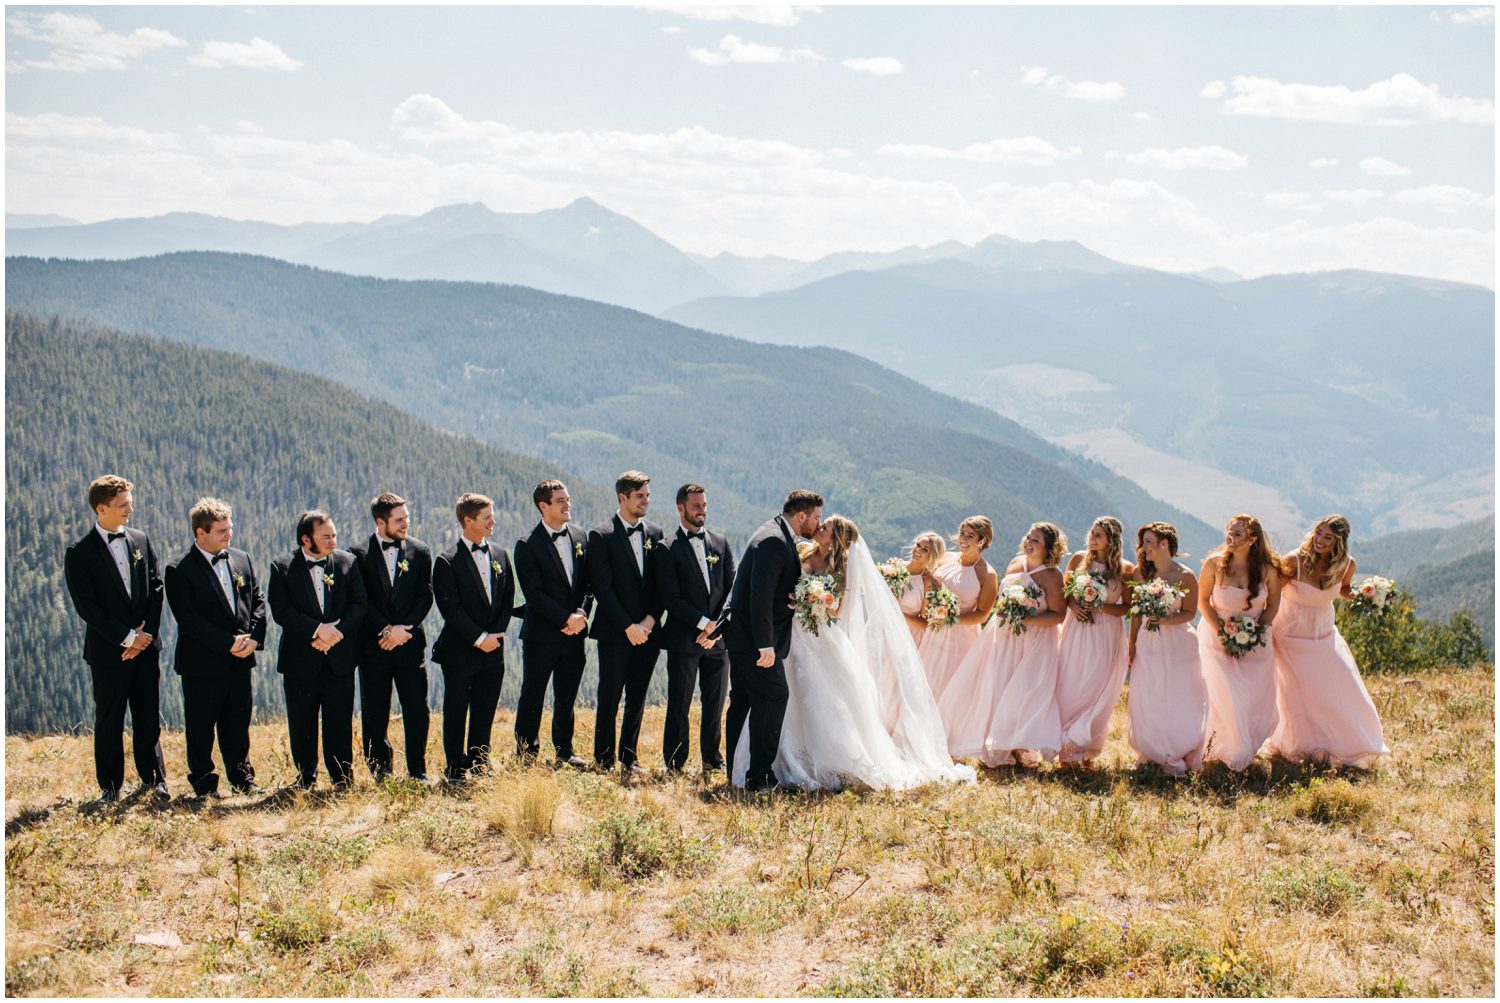 Bridal Party Photos, Vail Mountain Wedding Photos, Donovan Pavilion Vail Colorado Wedding Photos, Weddington Way, Blush Bridesmaids Dresses